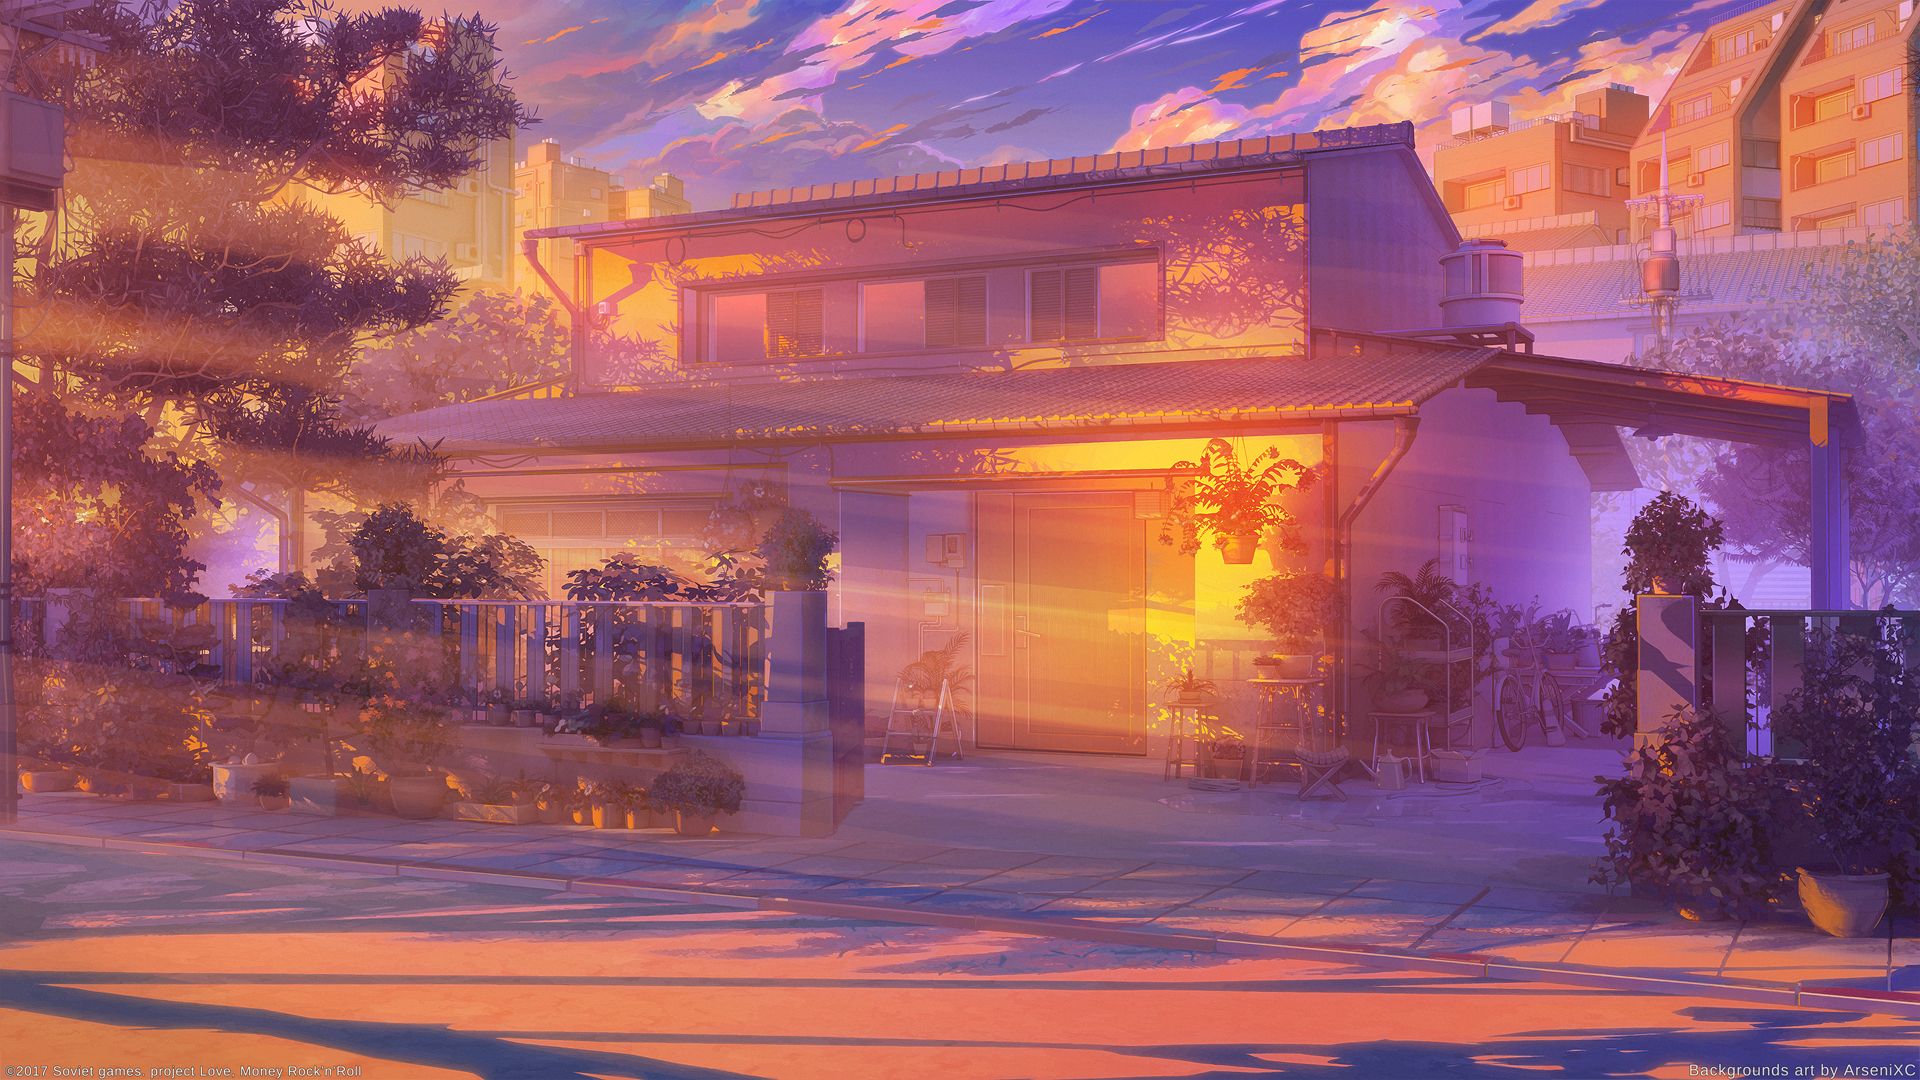 Himitsu House sunset